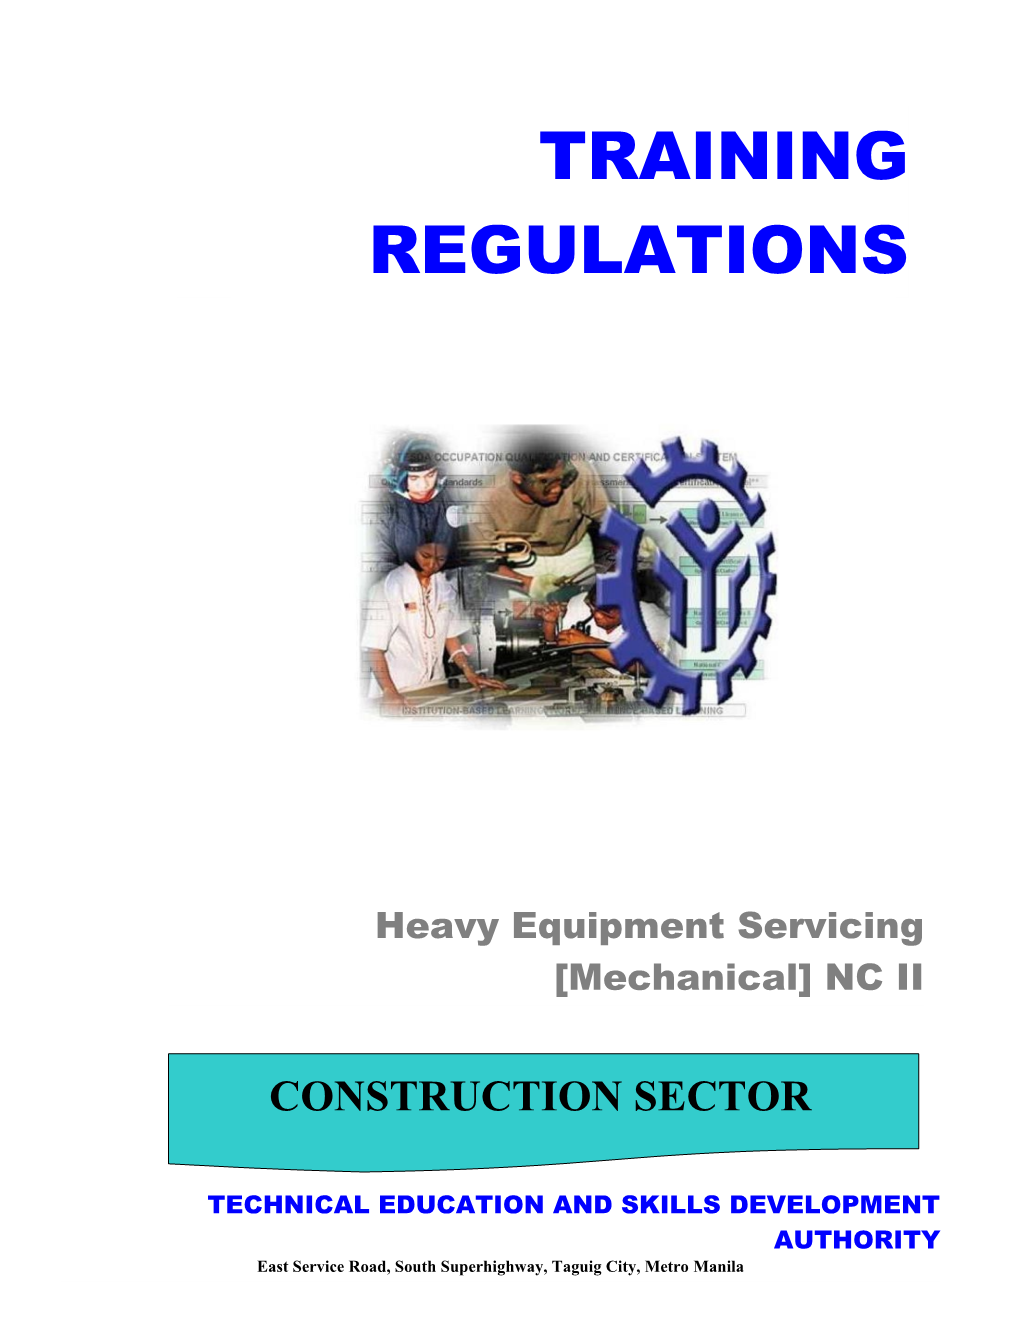 Heavy Equipment Servicing Mechanical NC II